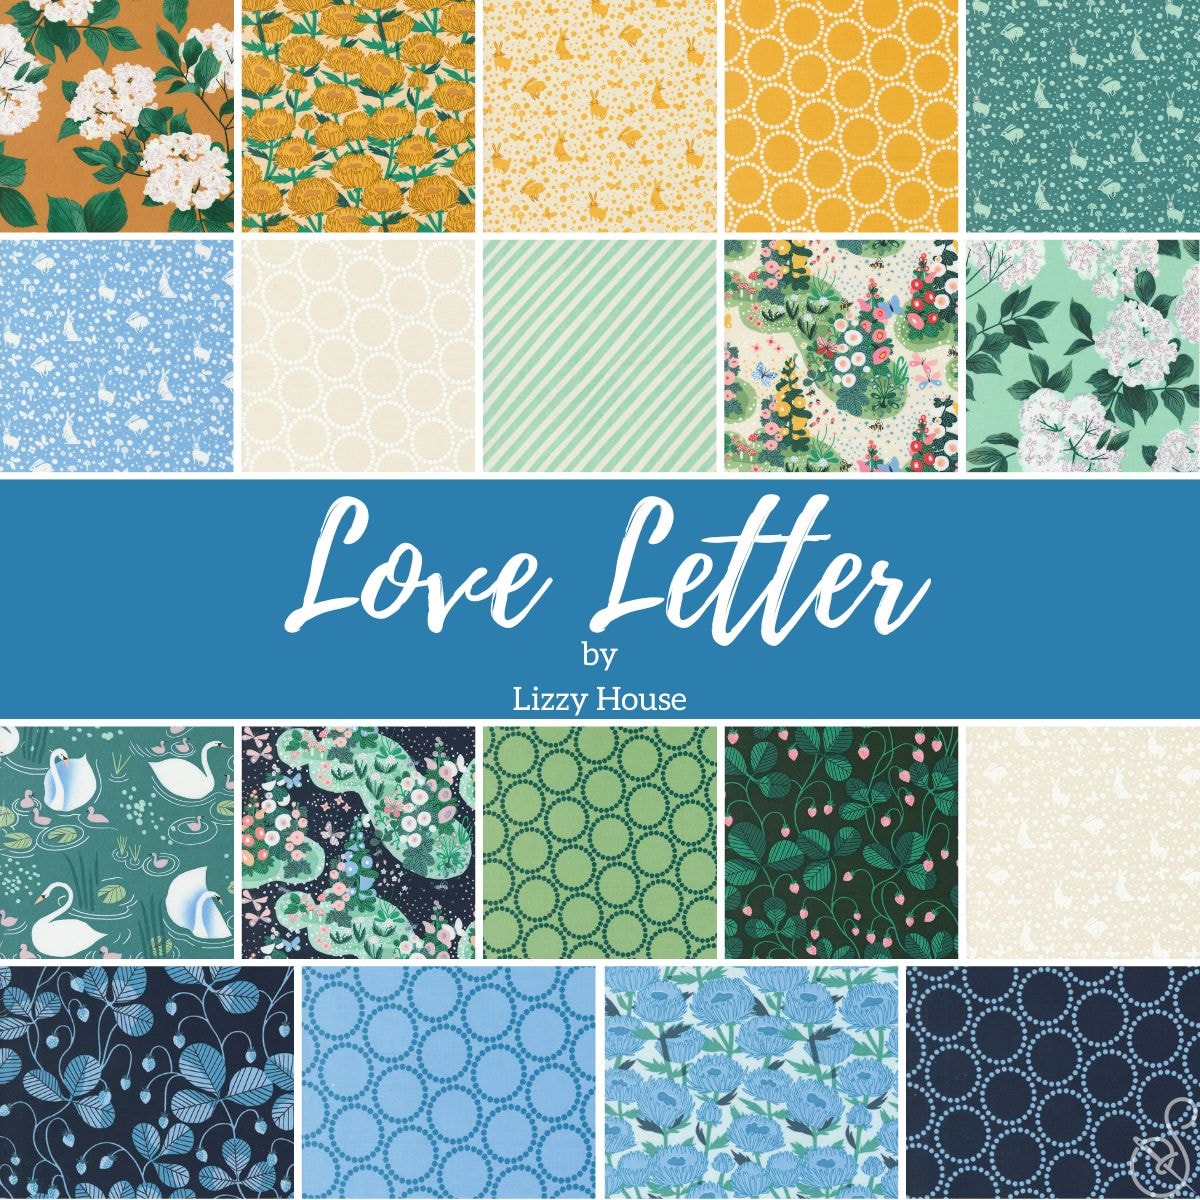 Love Letter Fat Quarter Bundle | Lizzy House - Blue/Green Colorway 19 FQs